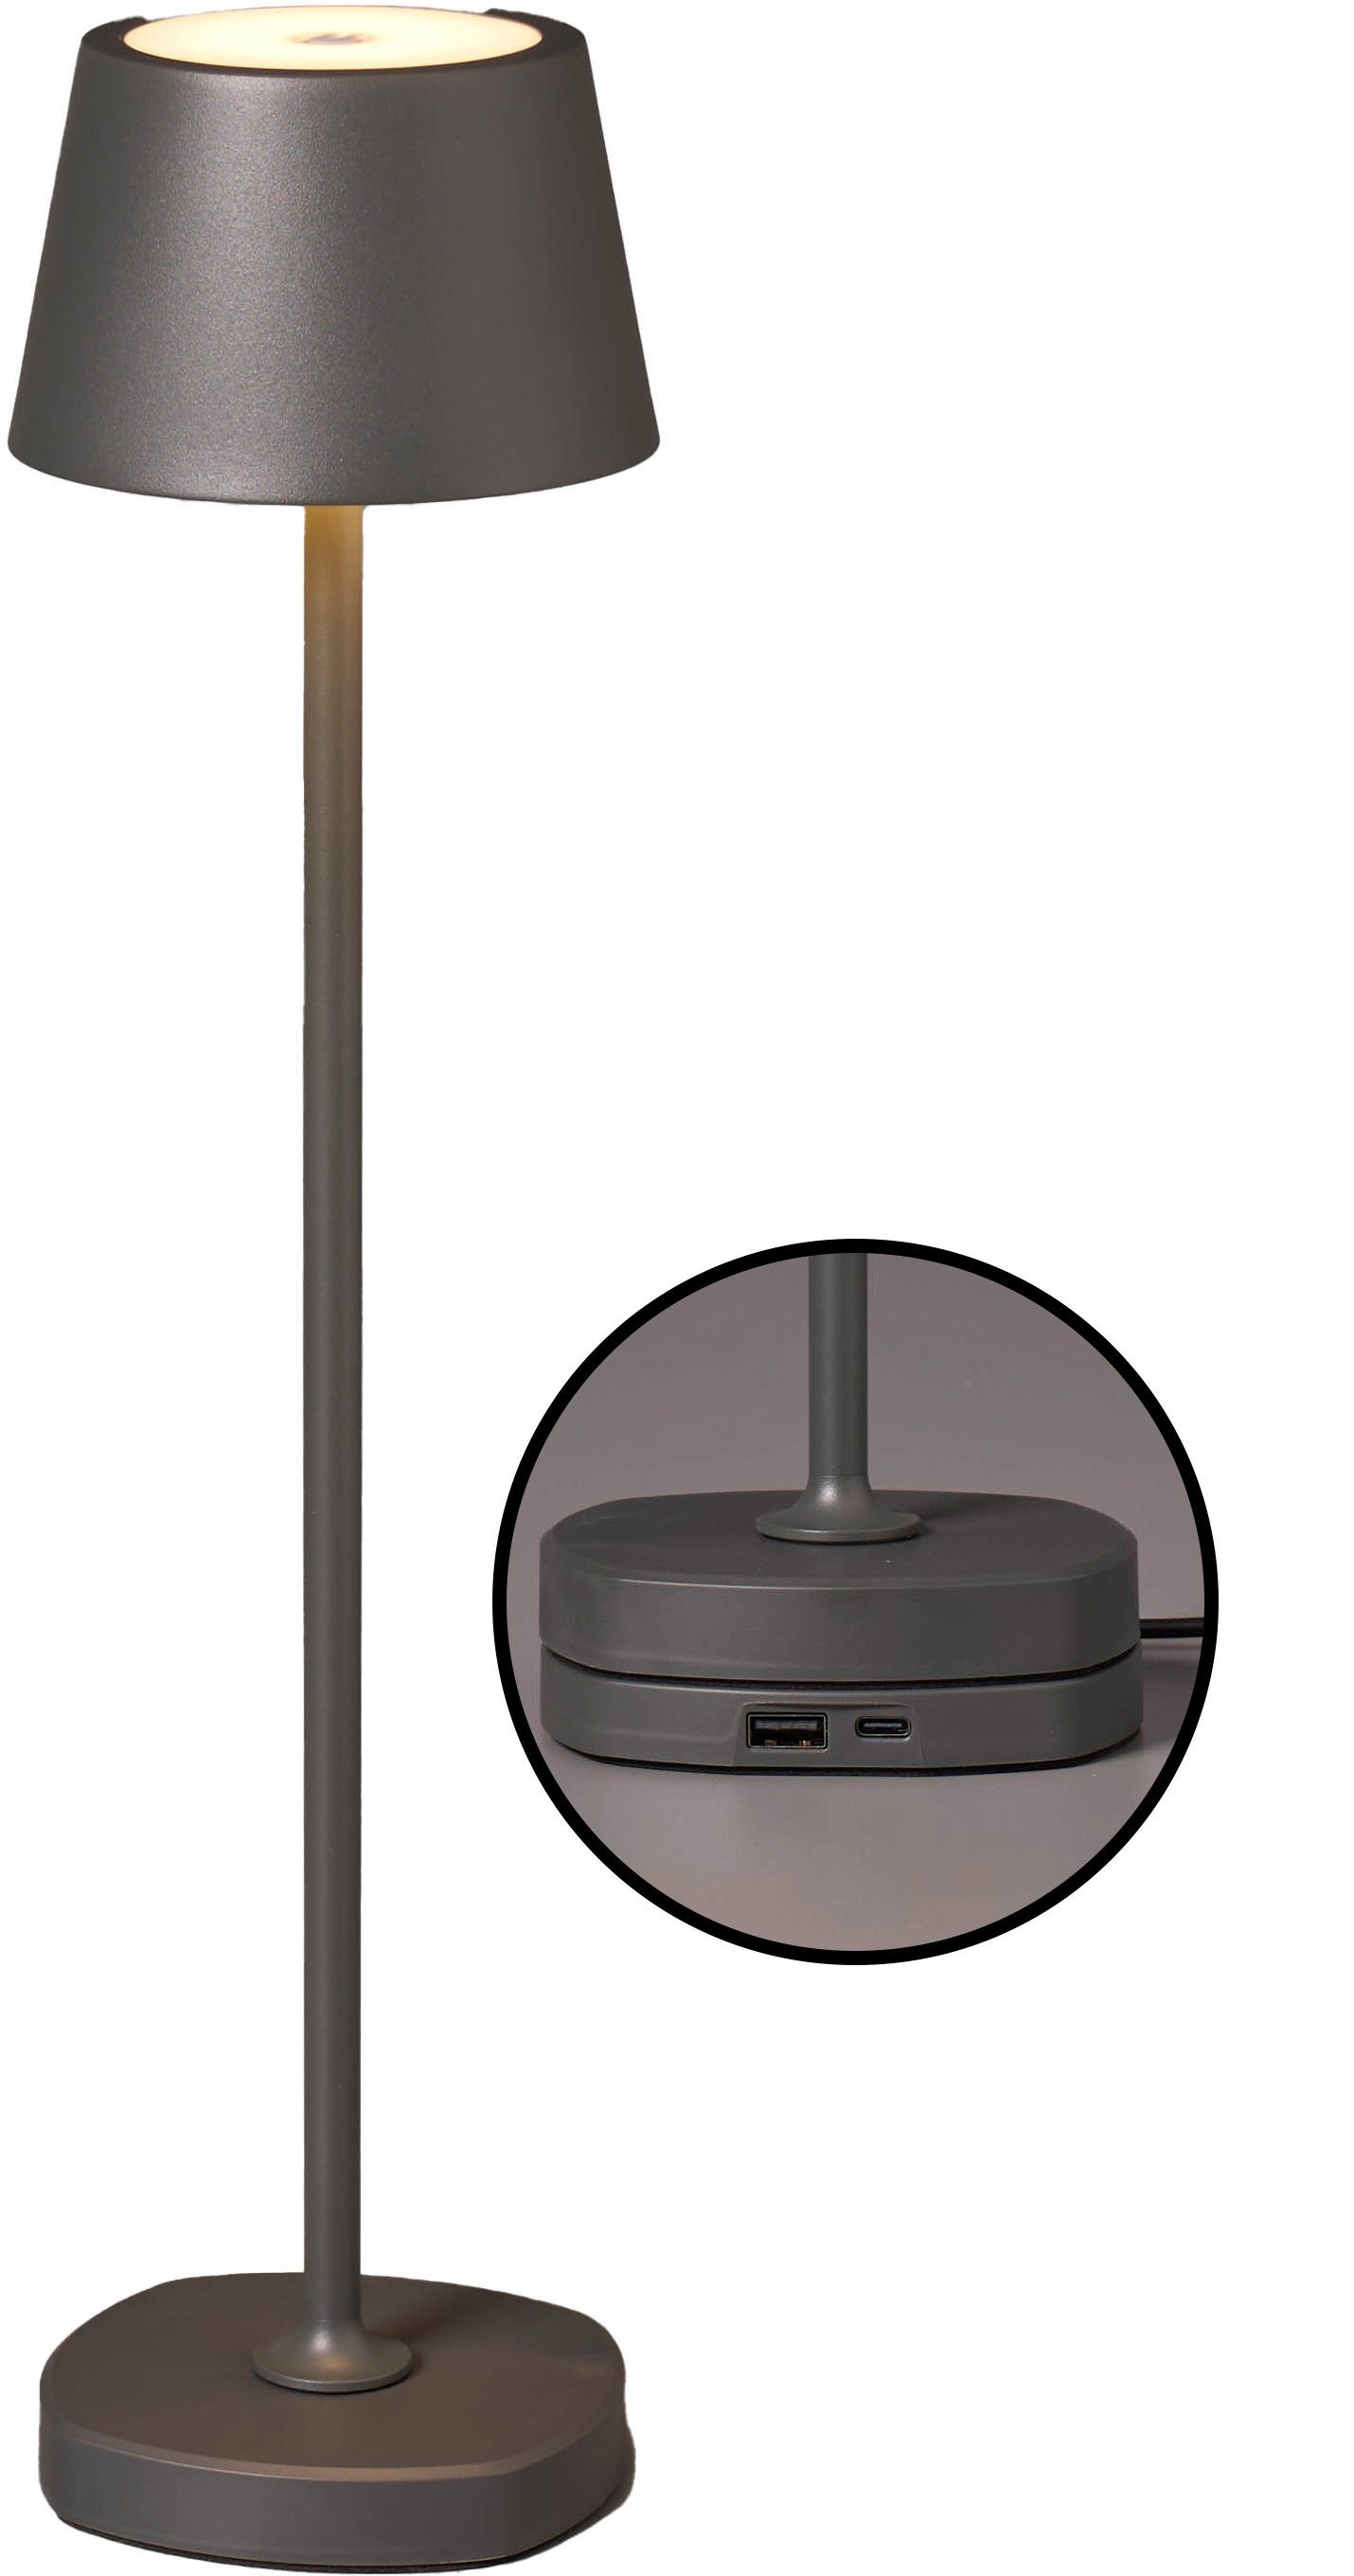 Northpoint Tischleuchte LED Akku Tischlampe mit Ladestation max. 45cm hoch warmweiße dimmbar grau